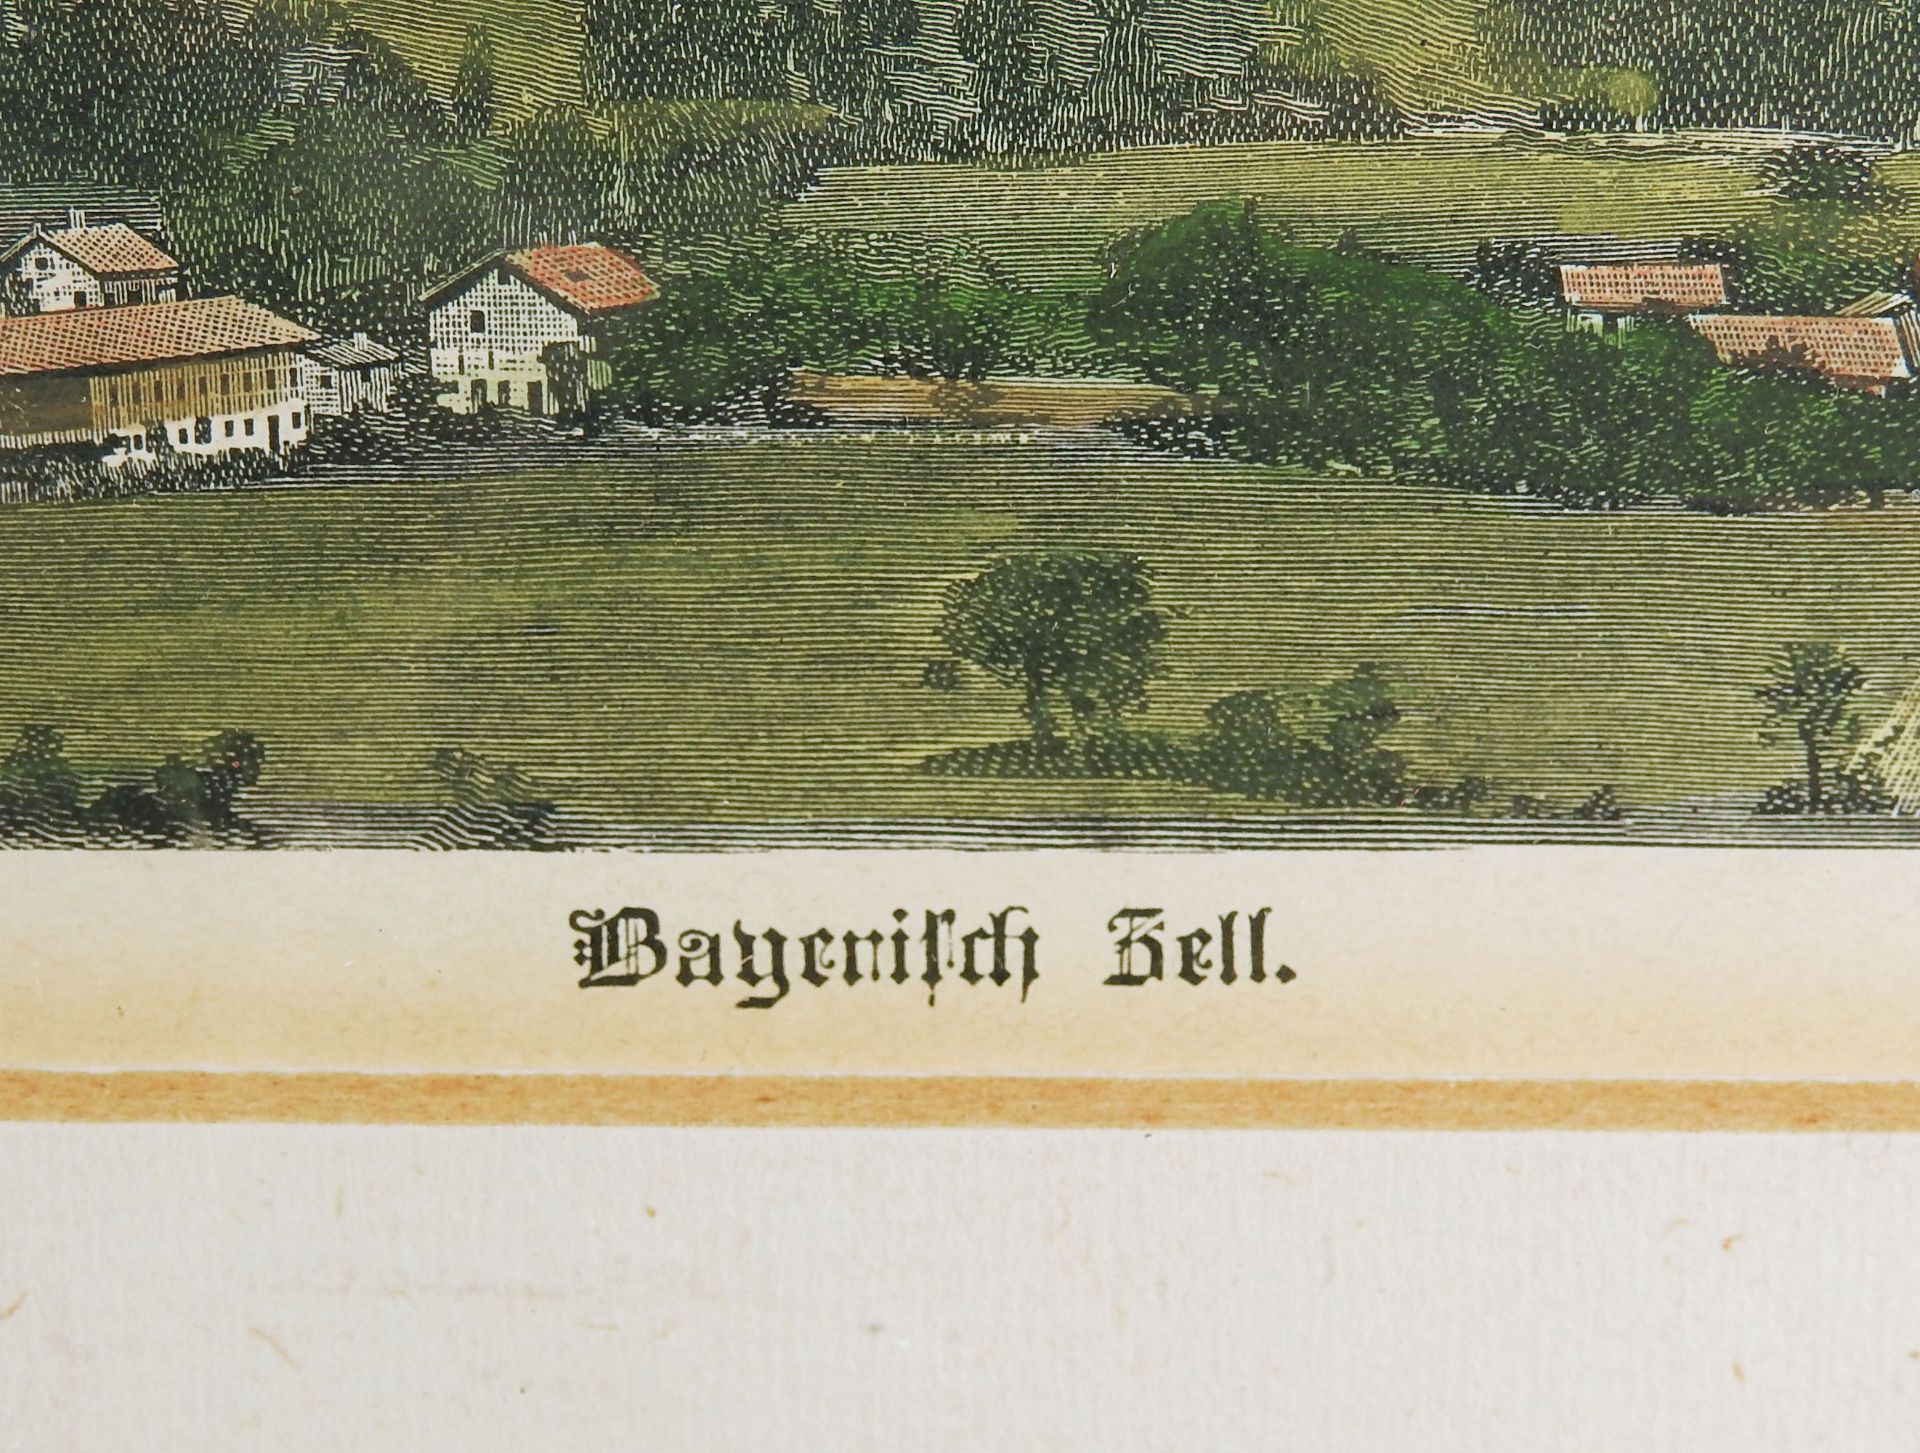 Ansicht von Bayrischzell - Image 3 of 5